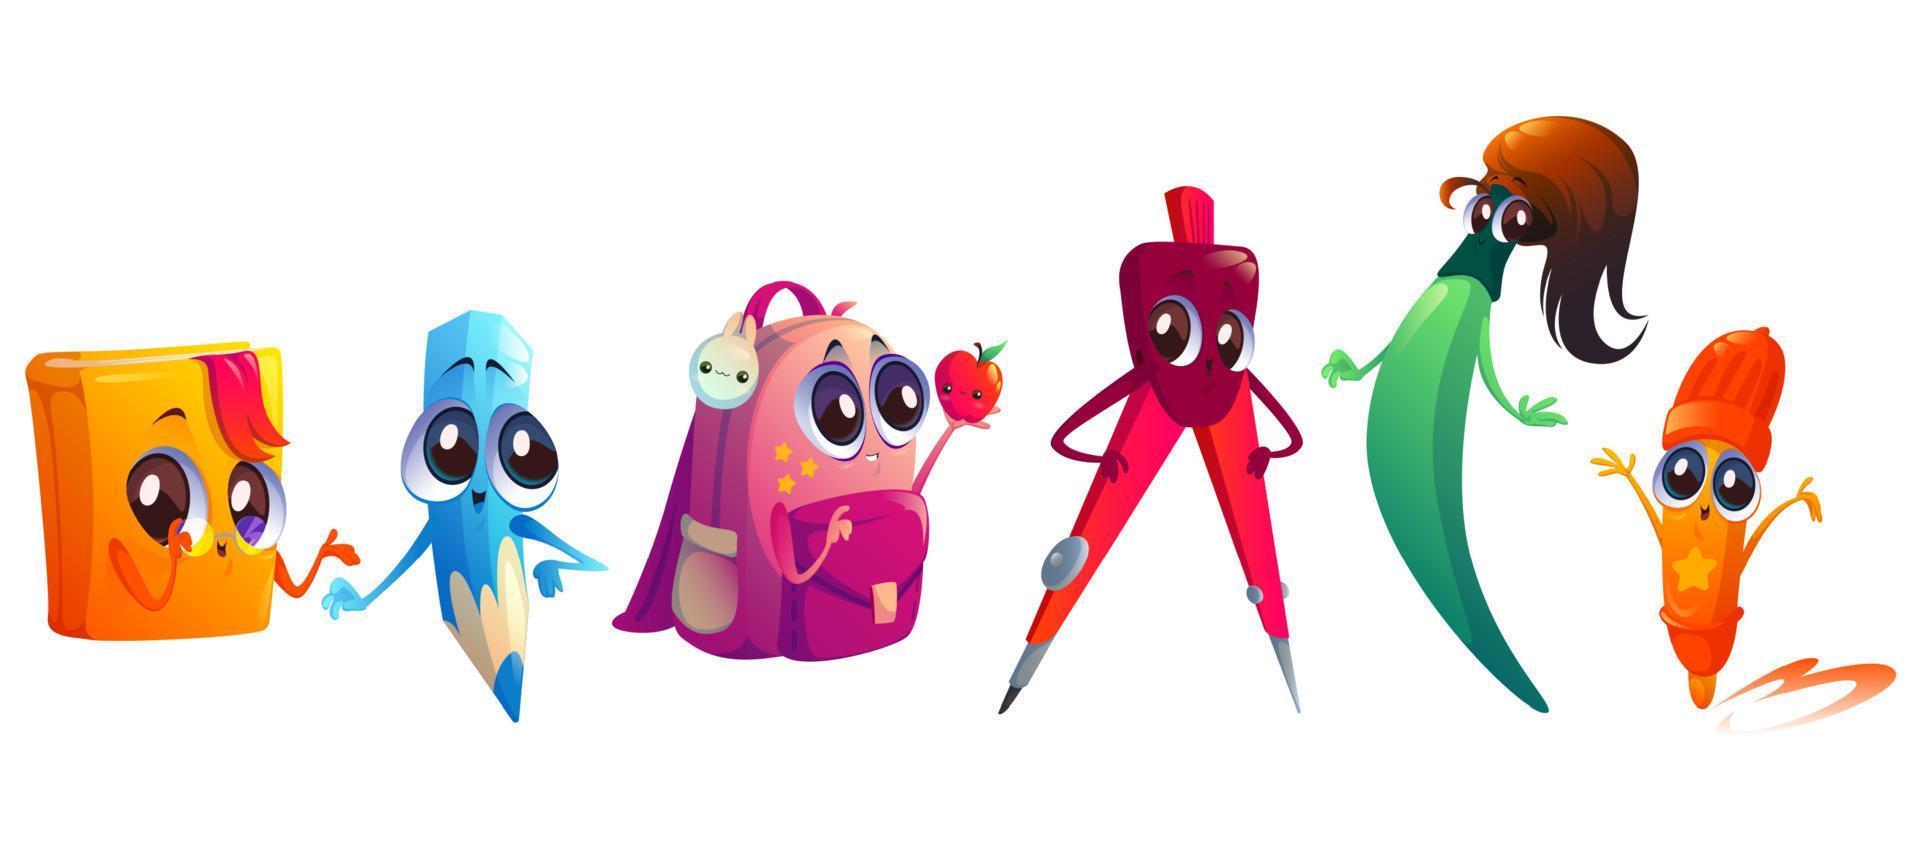 School supplies cartoon characters, cute mascots vector